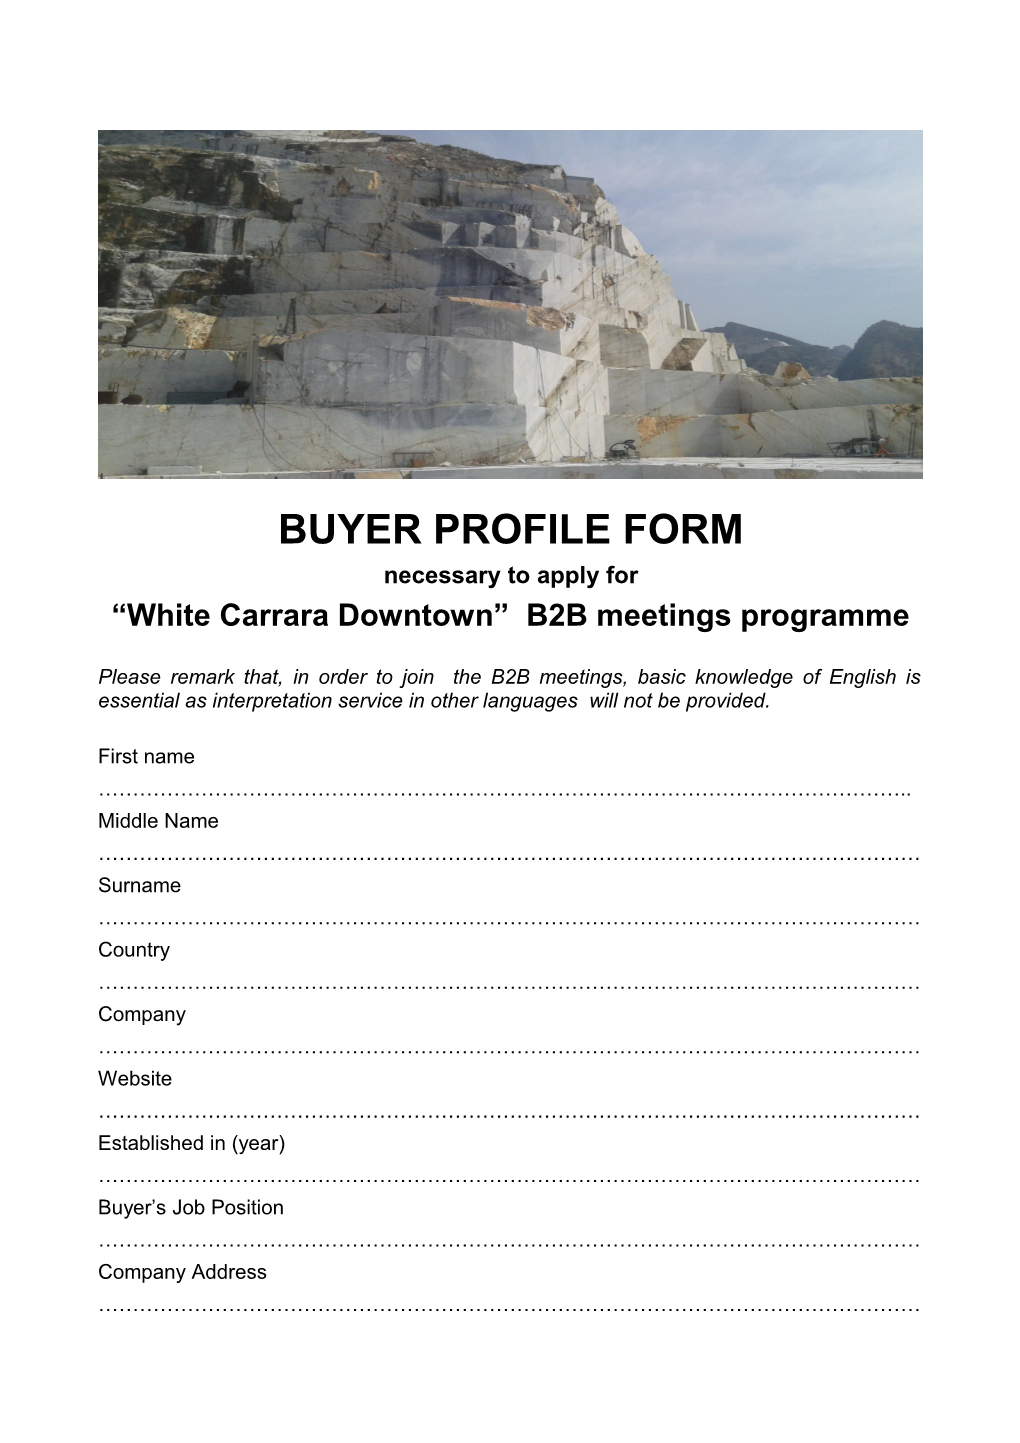 White Carrara Downtown B2B Meetings Programme